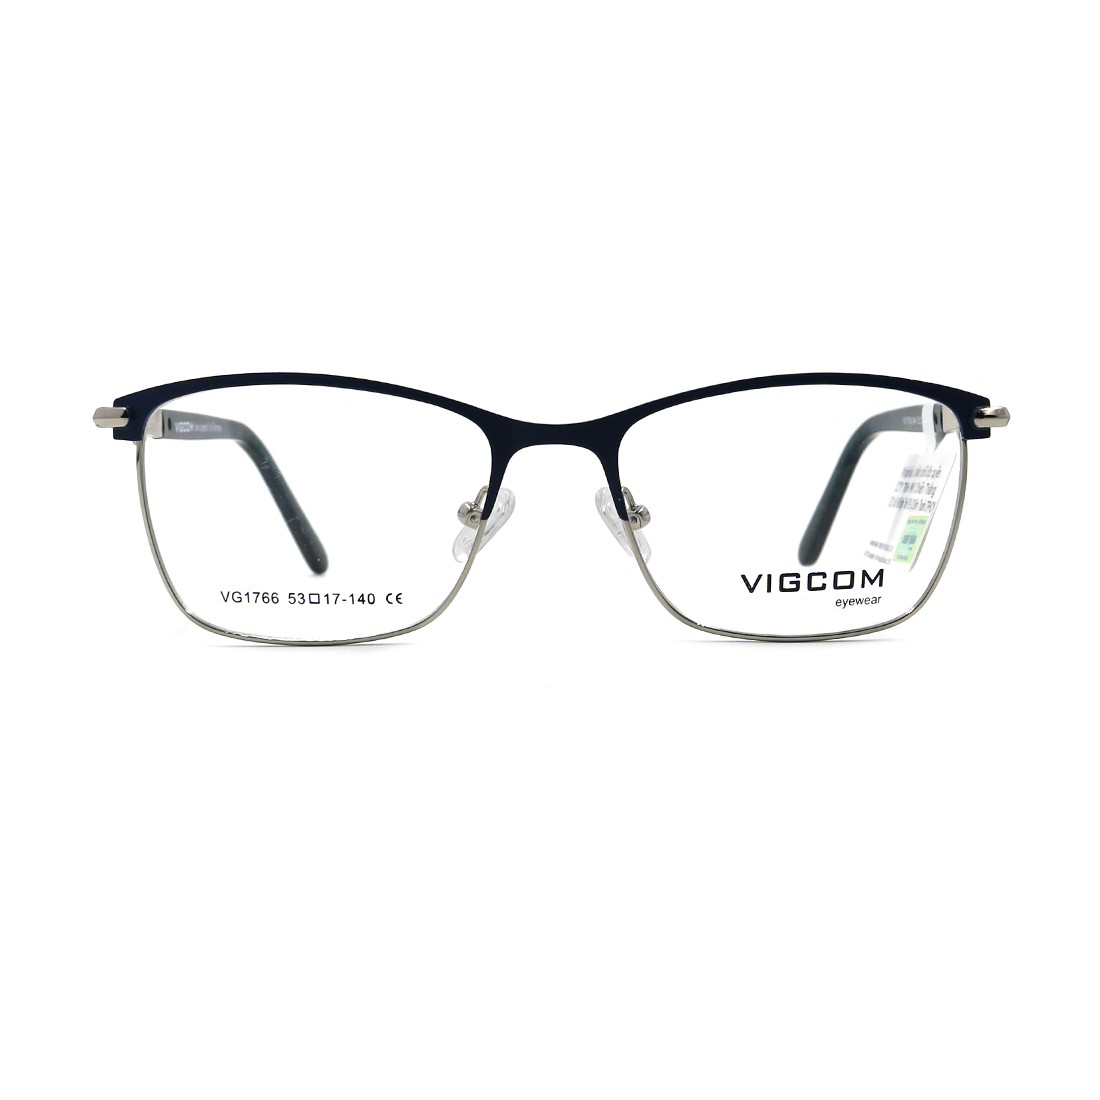 Gọng kính chính hãng Vigcom VG1766